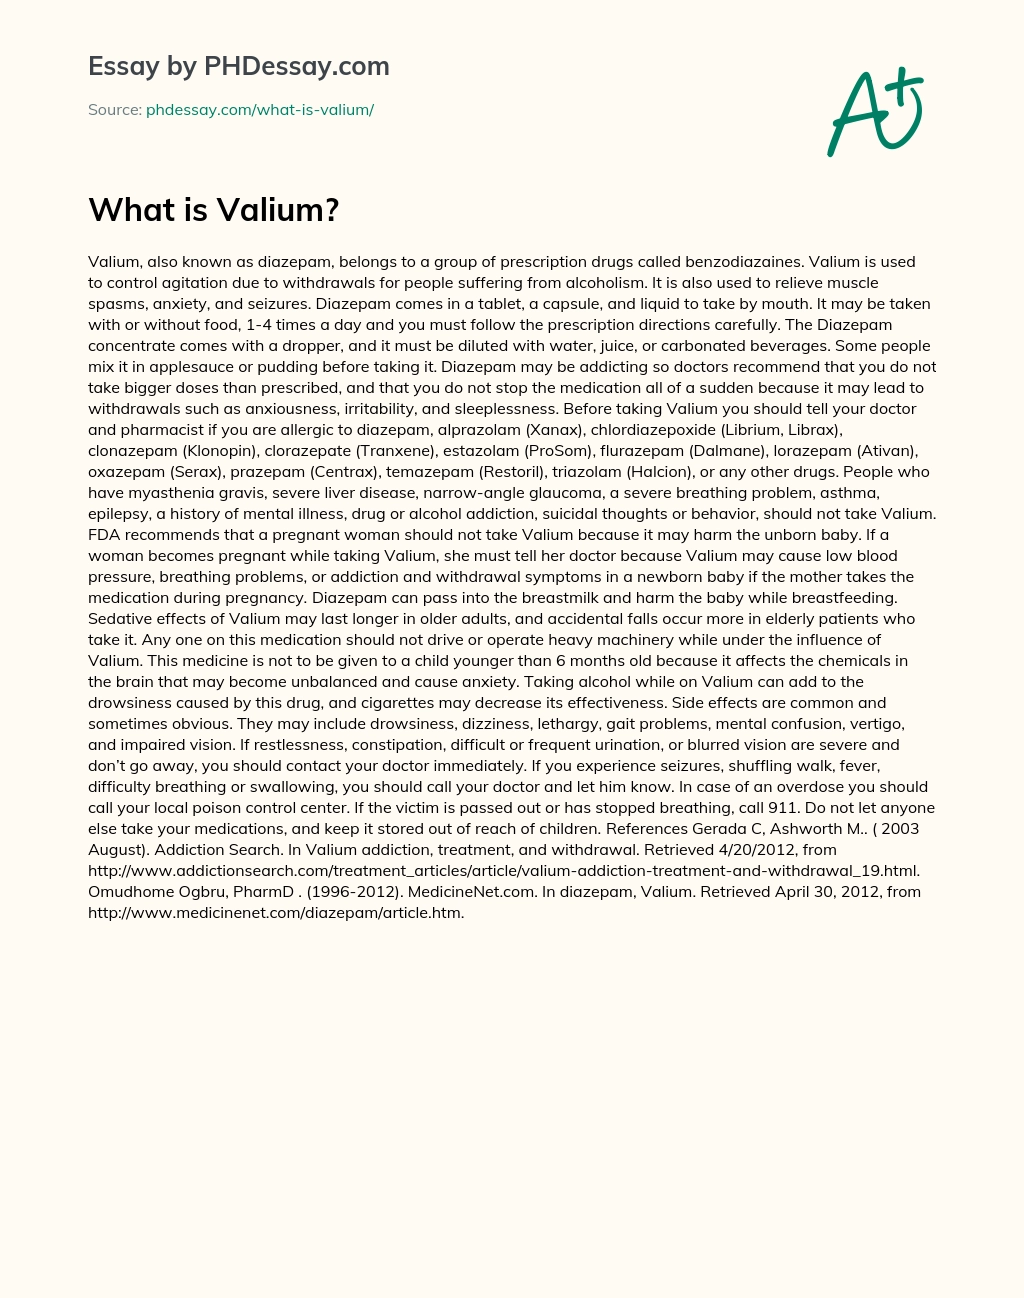 What is Valium? essay